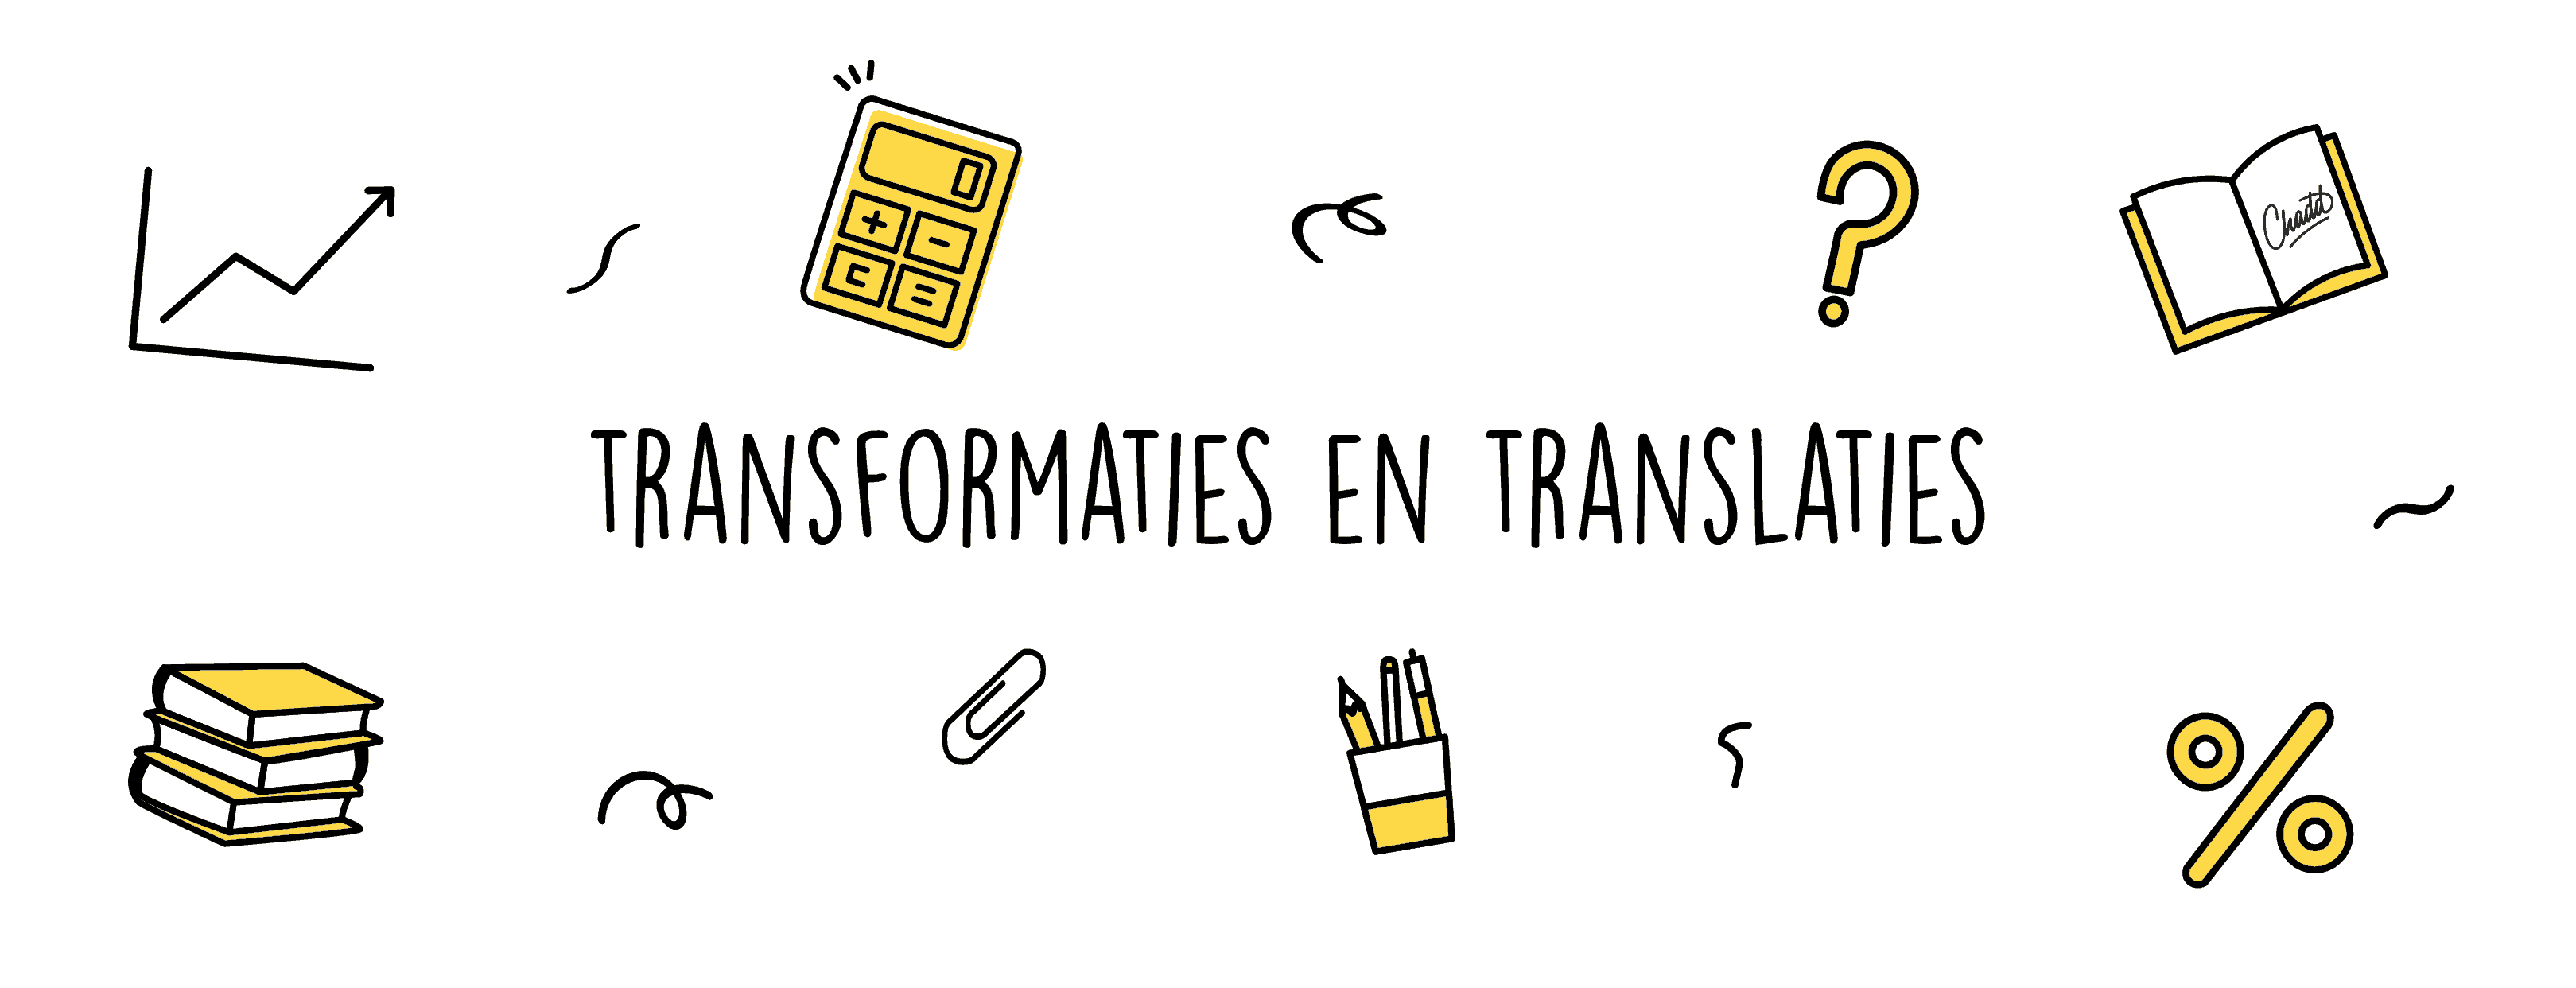 transformaties en translaties